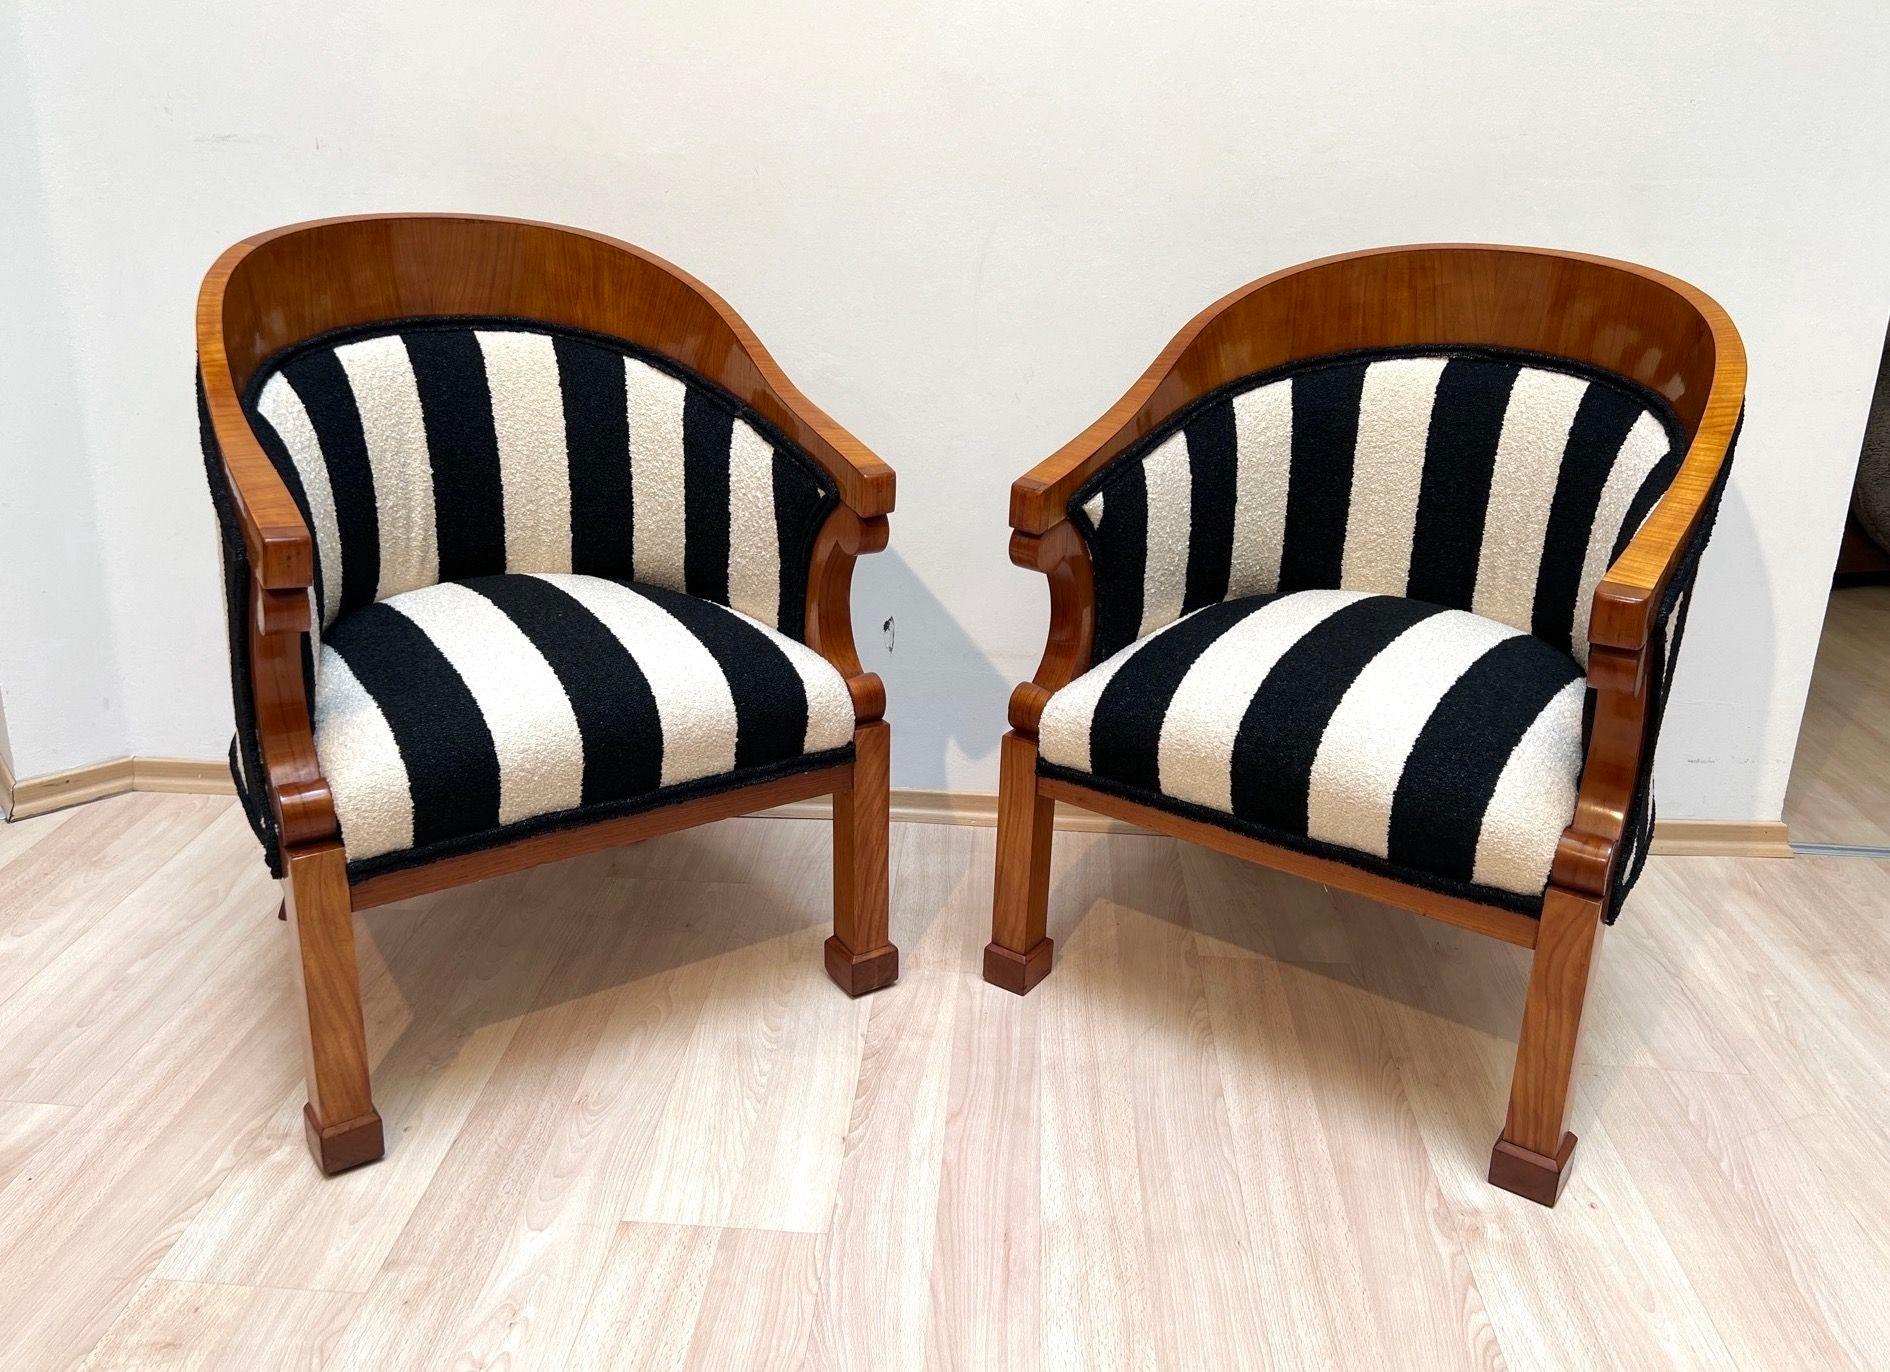 Schönes Paar original Biedermeier Bergere Stühle in Kirschholz aus Österreich um 1830.
Kirsche furniert und massiv, handpoliert mit Schellack (französisch poliert). Solide Stollenfüße aus Kirsche. Vierkantige, konisch zulaufende Beine an der